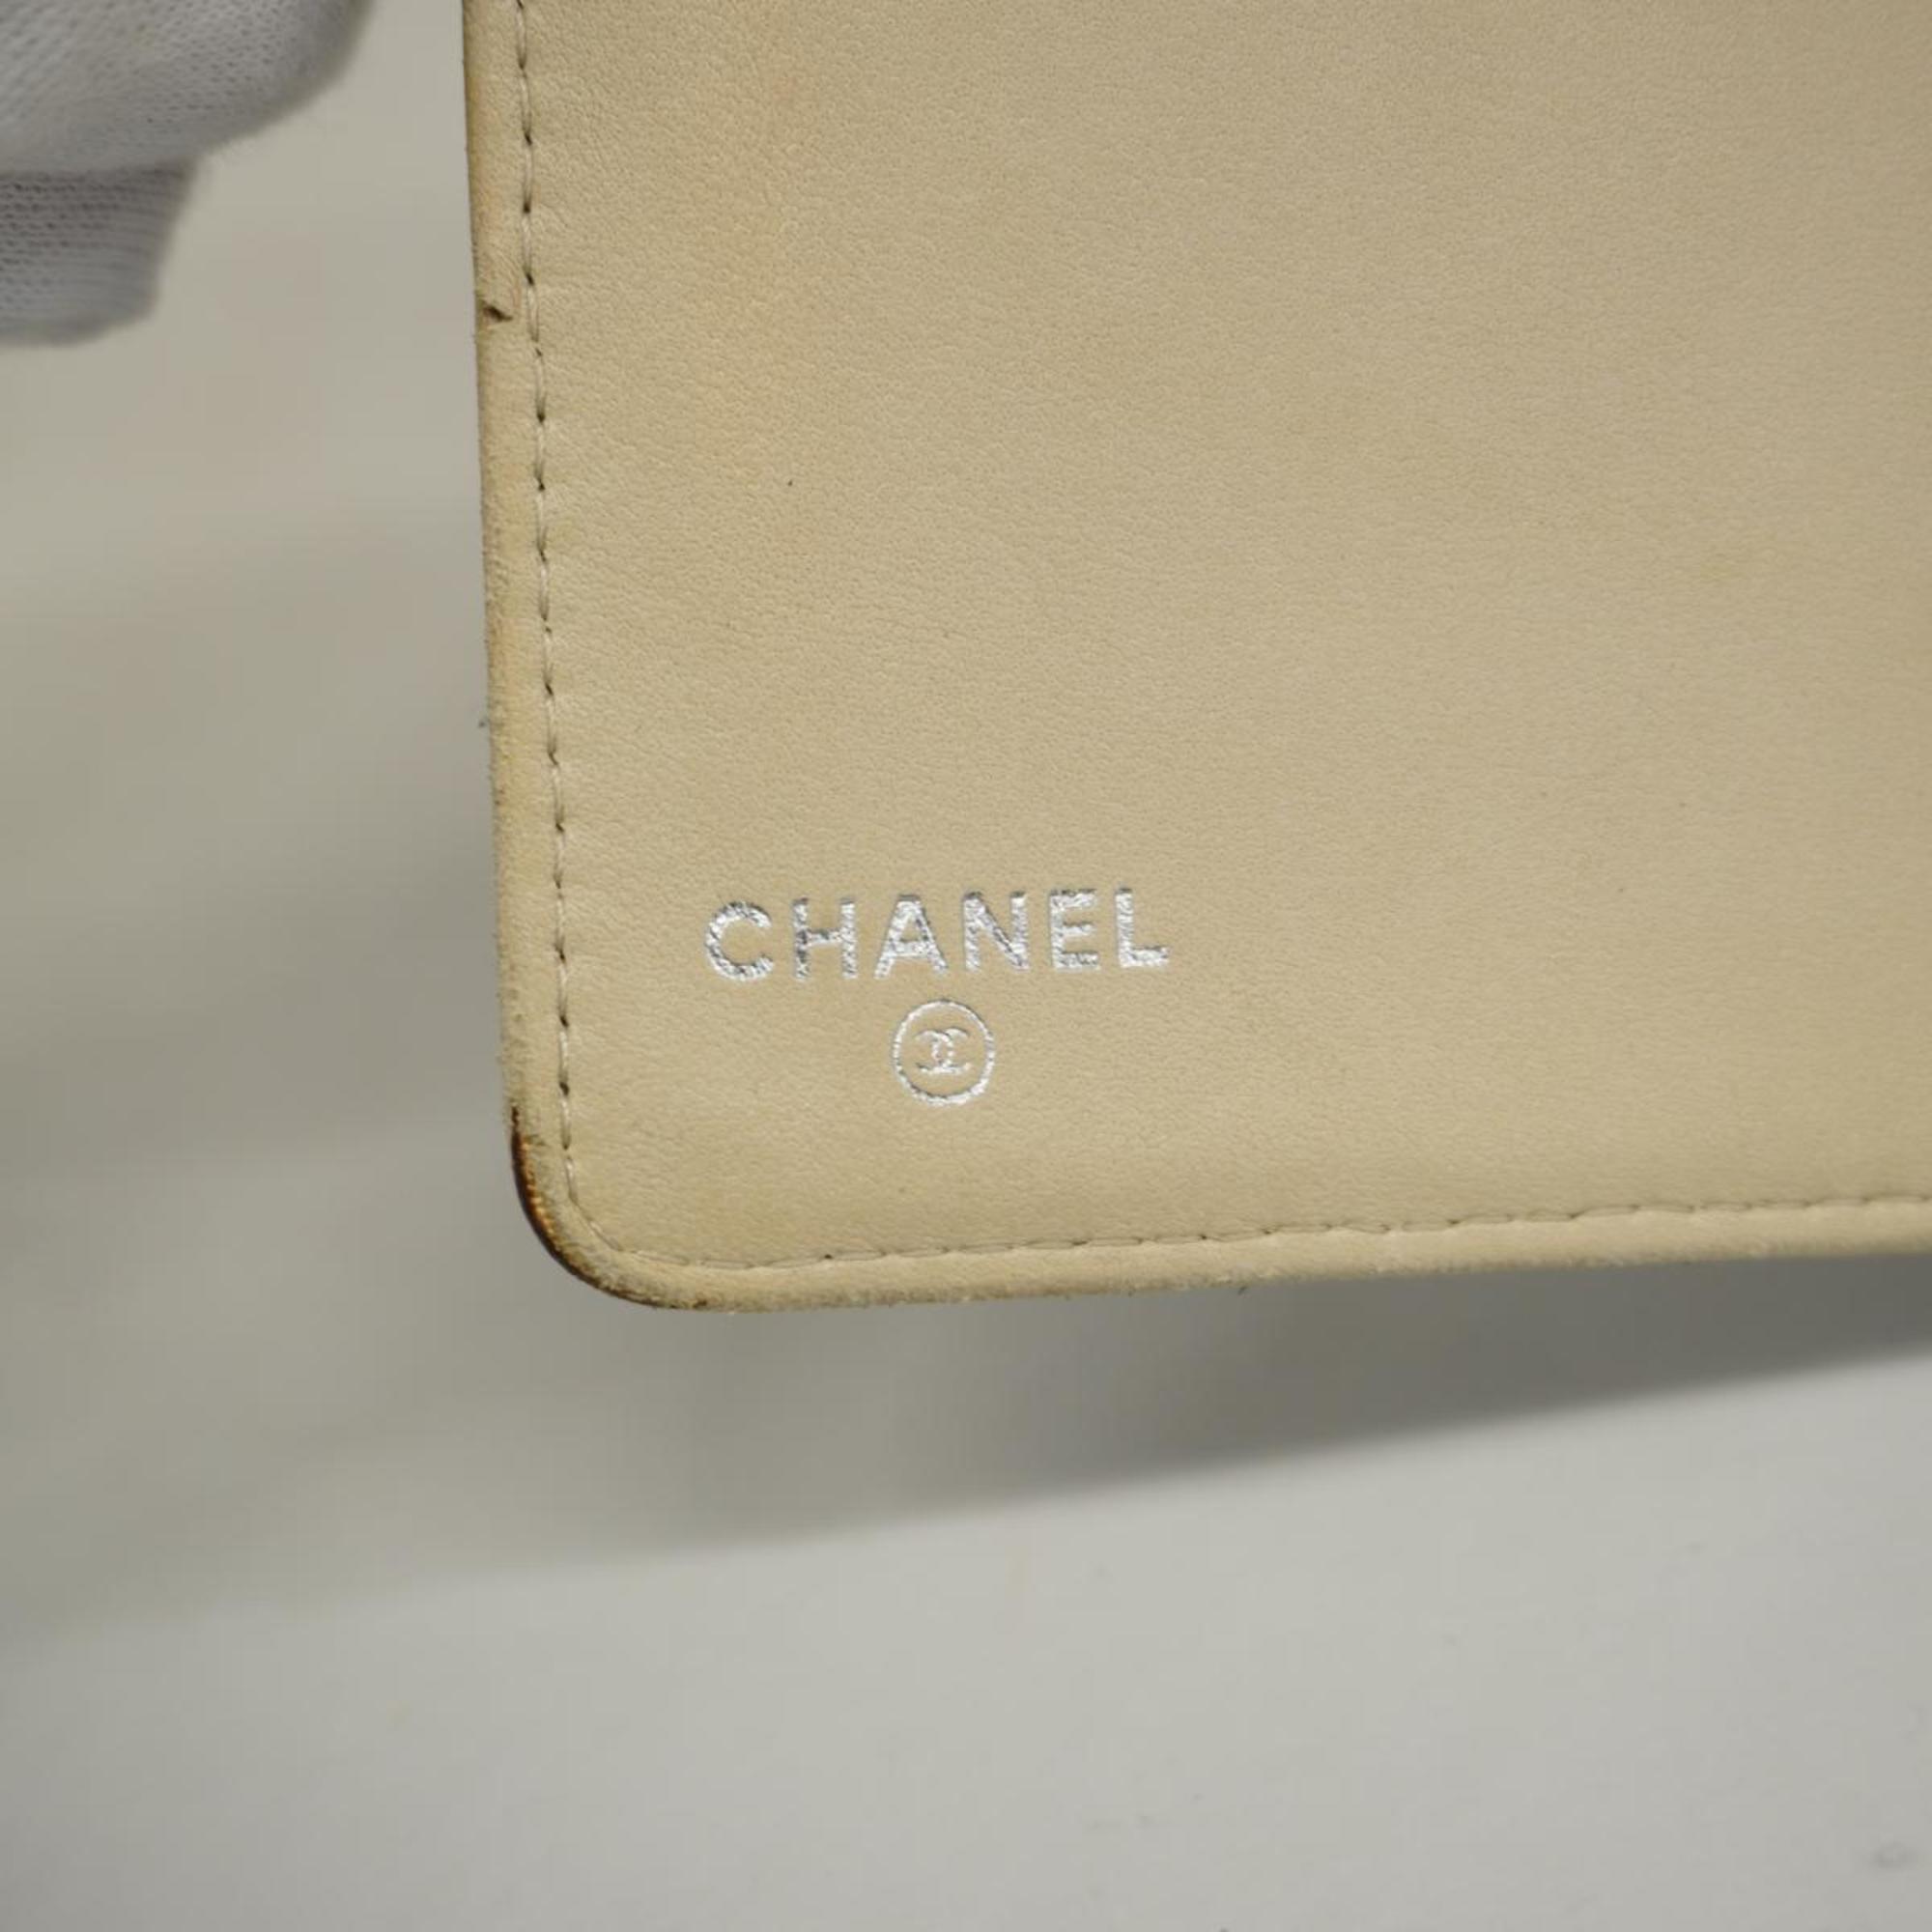 シャネル(Chanel) シャネル 長財布 カメリア ラムスキン カーキグレー   レディース